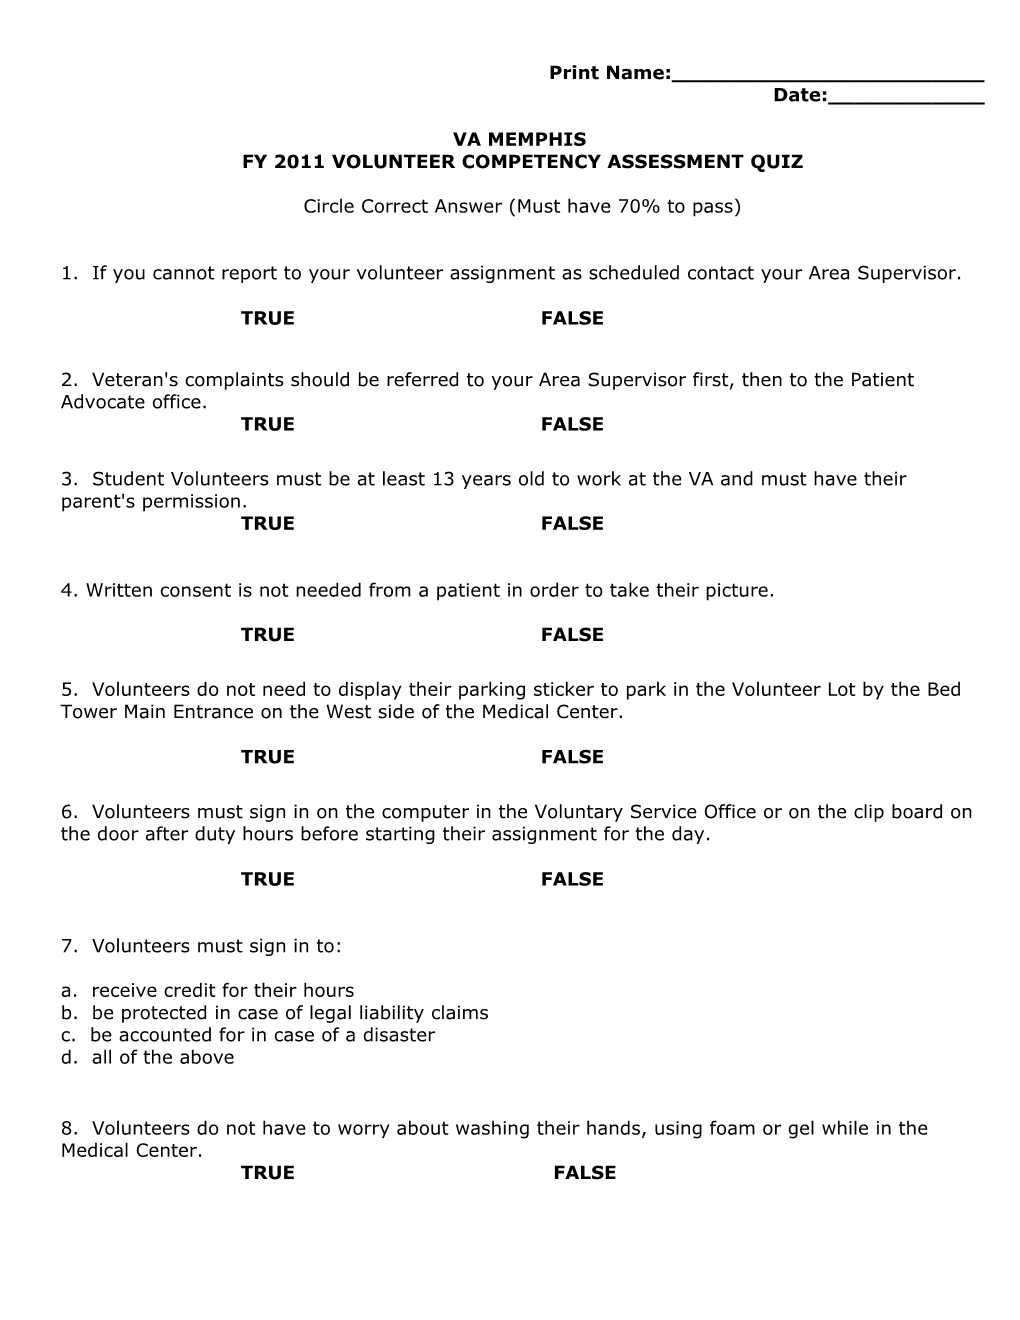 FY 2011 Volunteer Competency Assessment Quiz